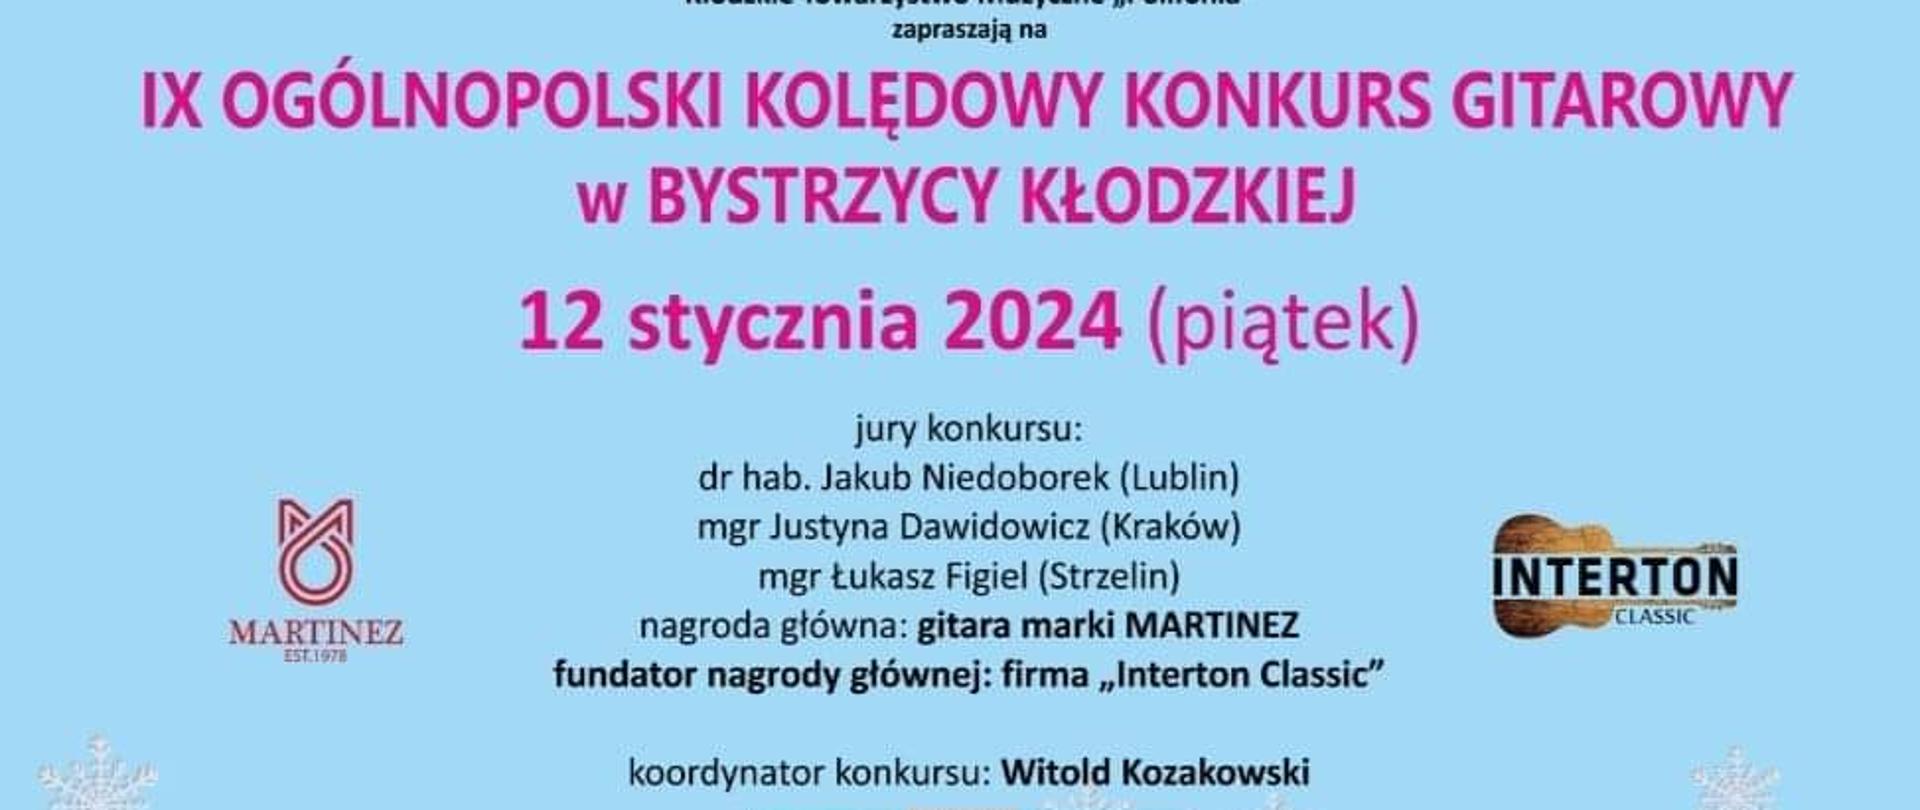 Zdjęcie przedstawia plakat promujący IX Ogólnopolski Kolędowy Konkurs Gitarowy z dnia 12 stycznia 2024